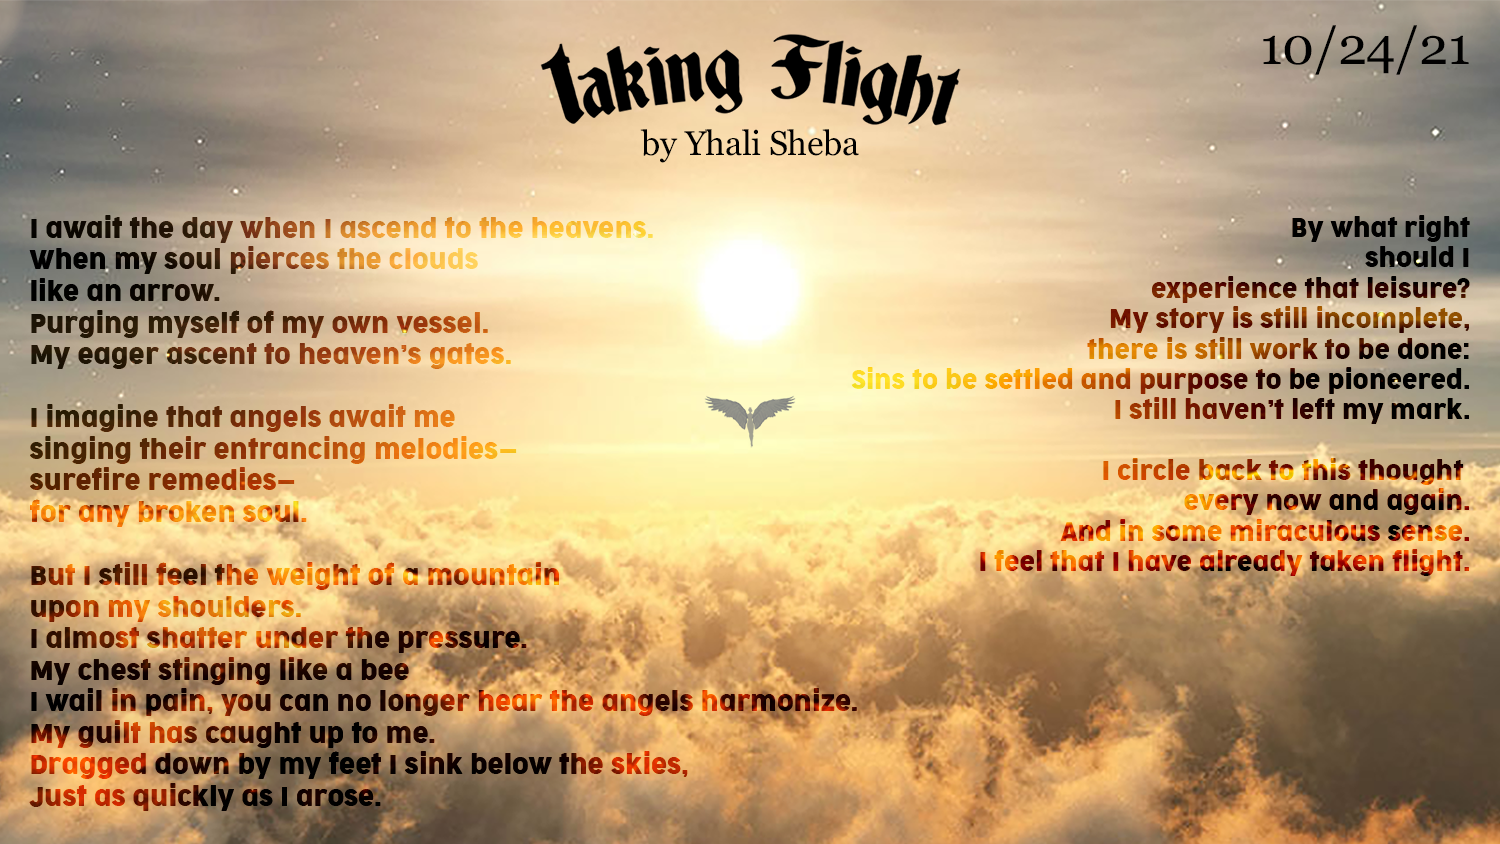 Poem by Yhali Sheba Taking Flight